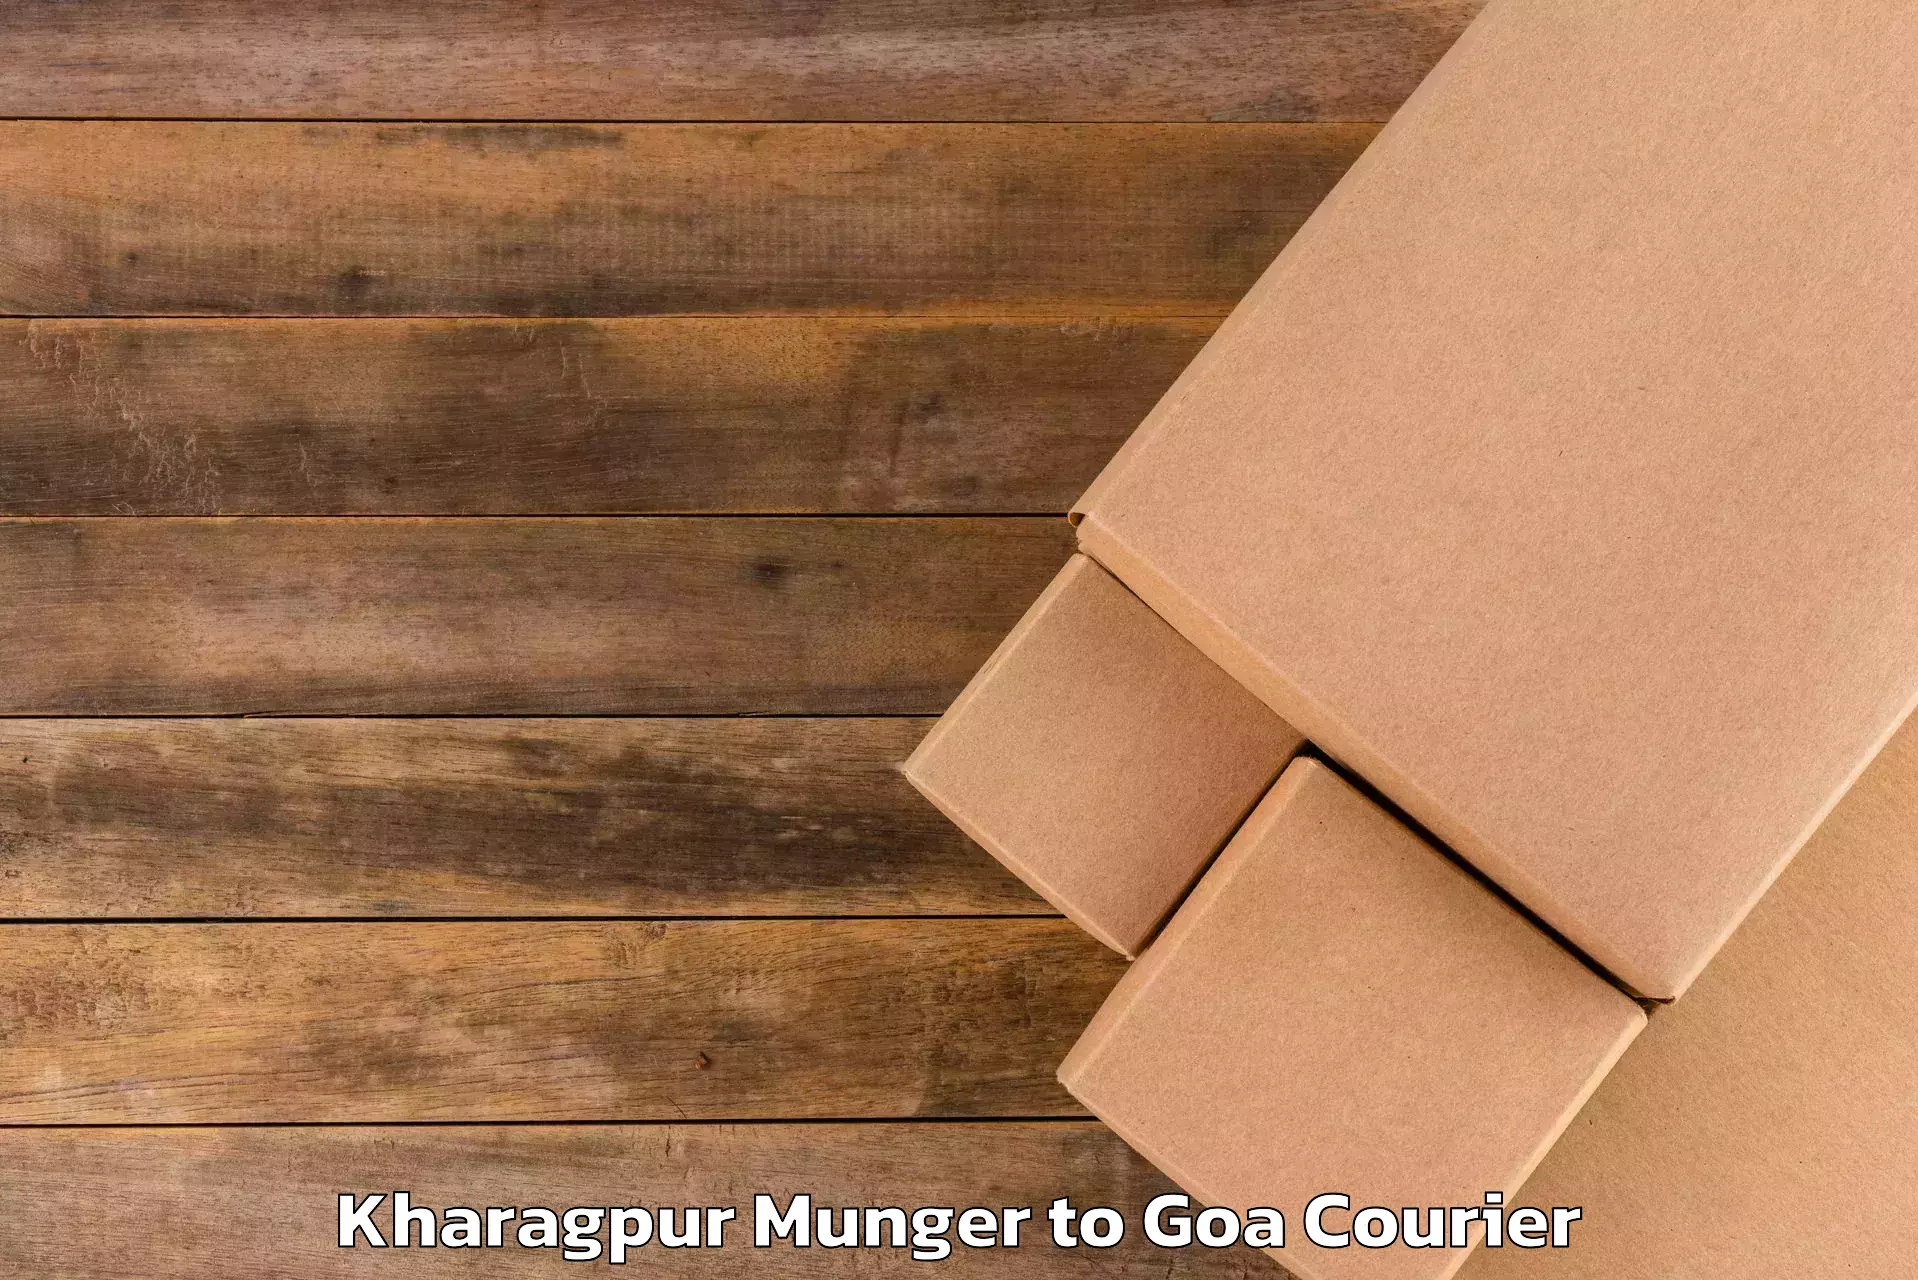 Baggage transport technology Kharagpur Munger to Sanvordem